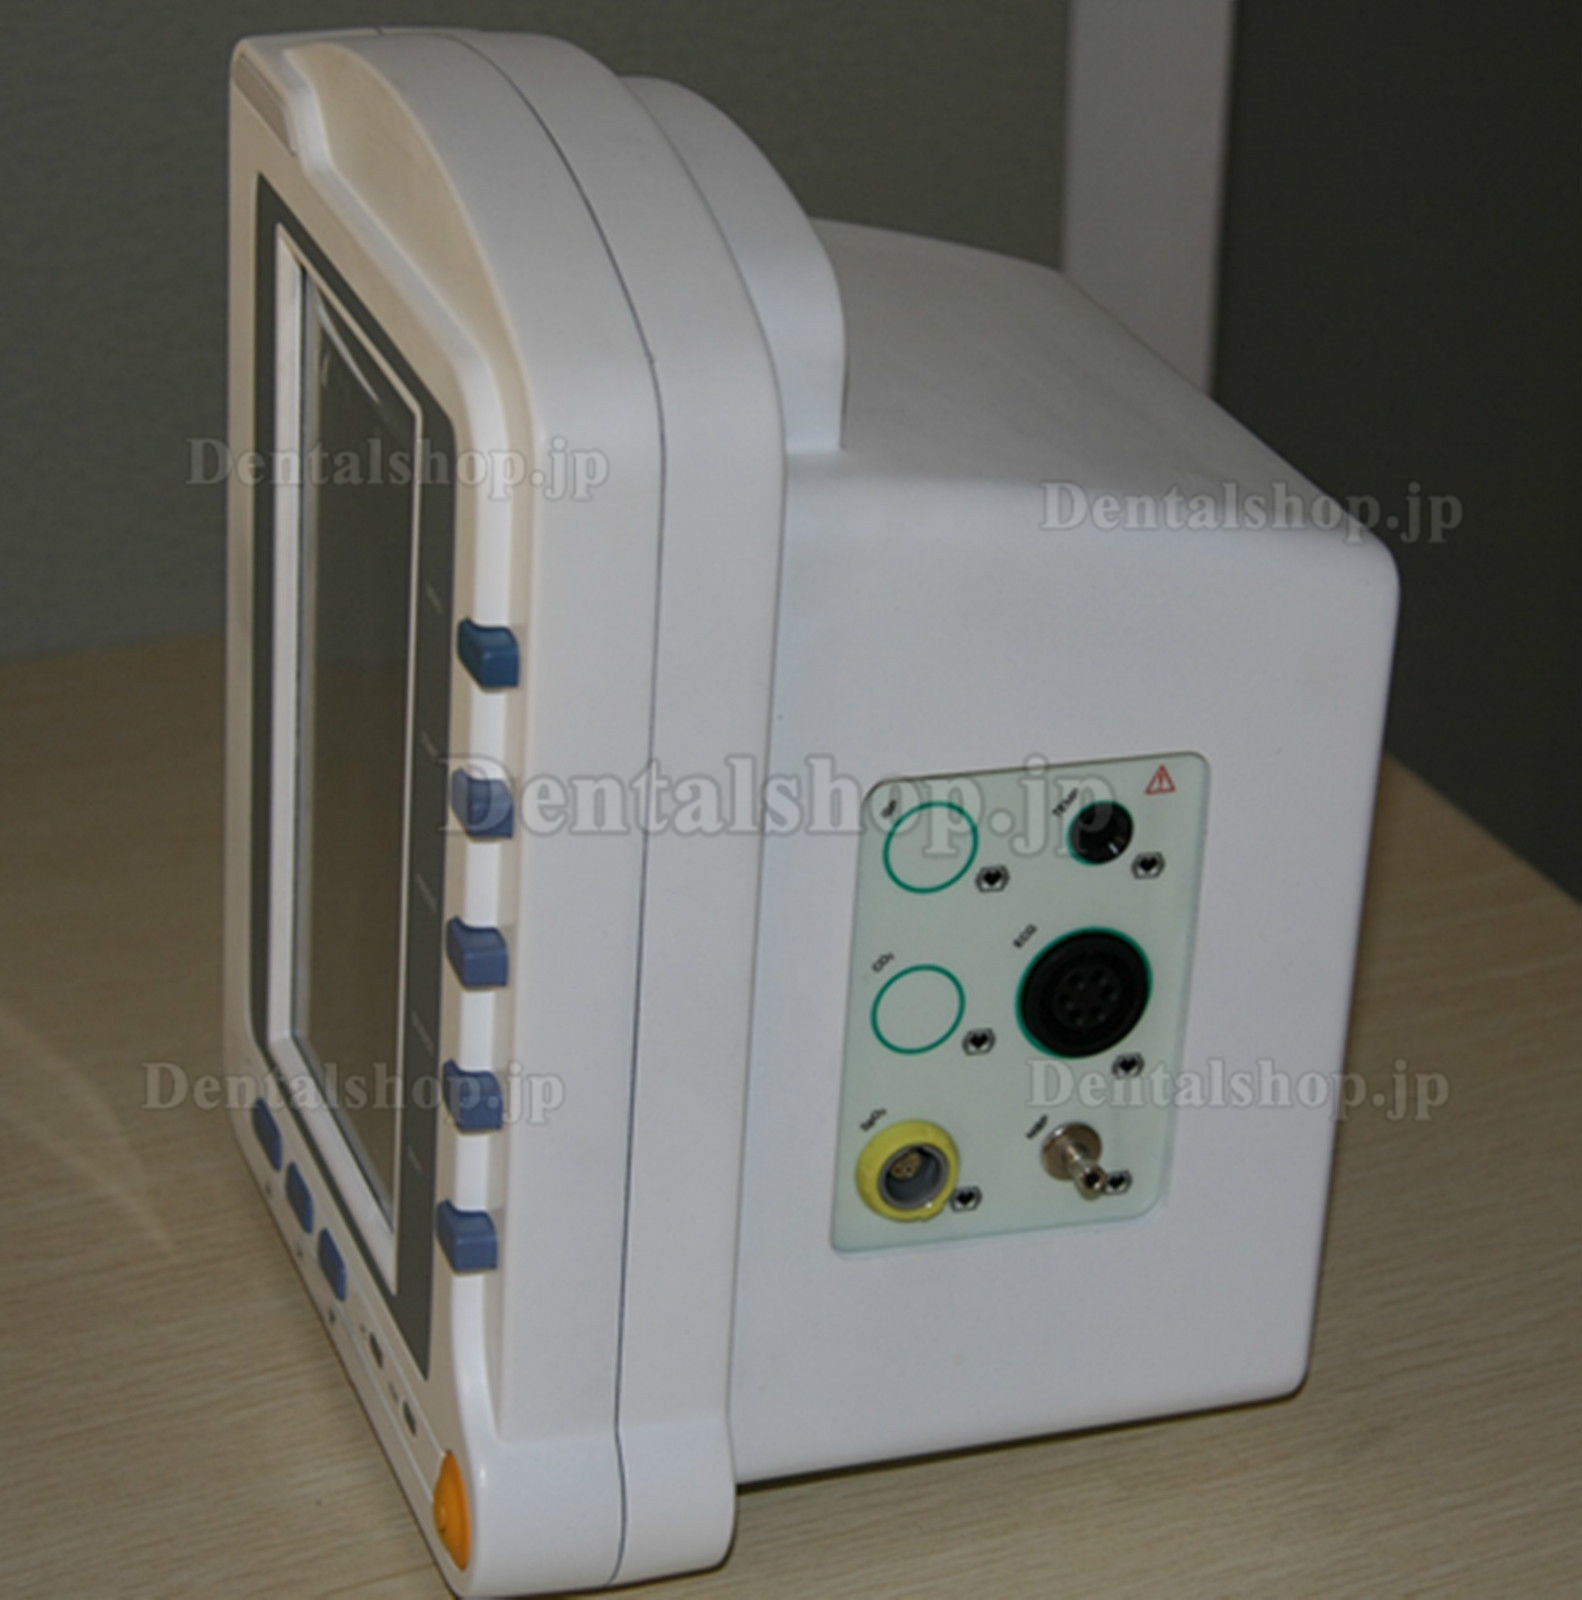 COMTEC® CMS6500バイタルサインモニタ(生体情報モニタ)